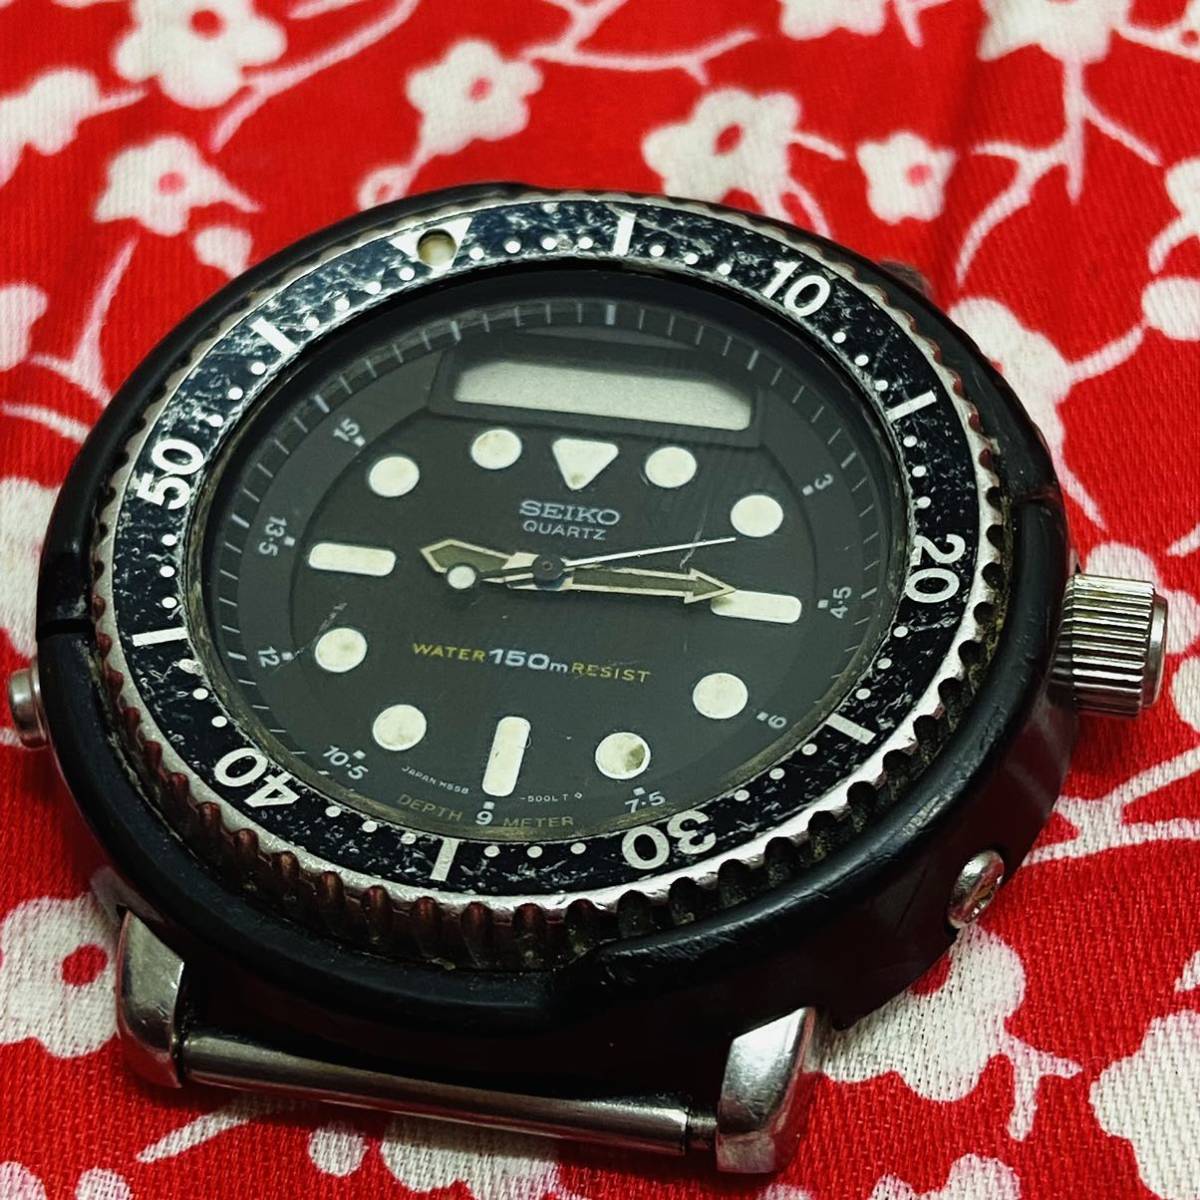 SEIKOセイコーH558-5000ビンテージ150mハイブリッド ダイバー腕 時計ARNIEアーニーブラック×シルバー系現状品_画像1